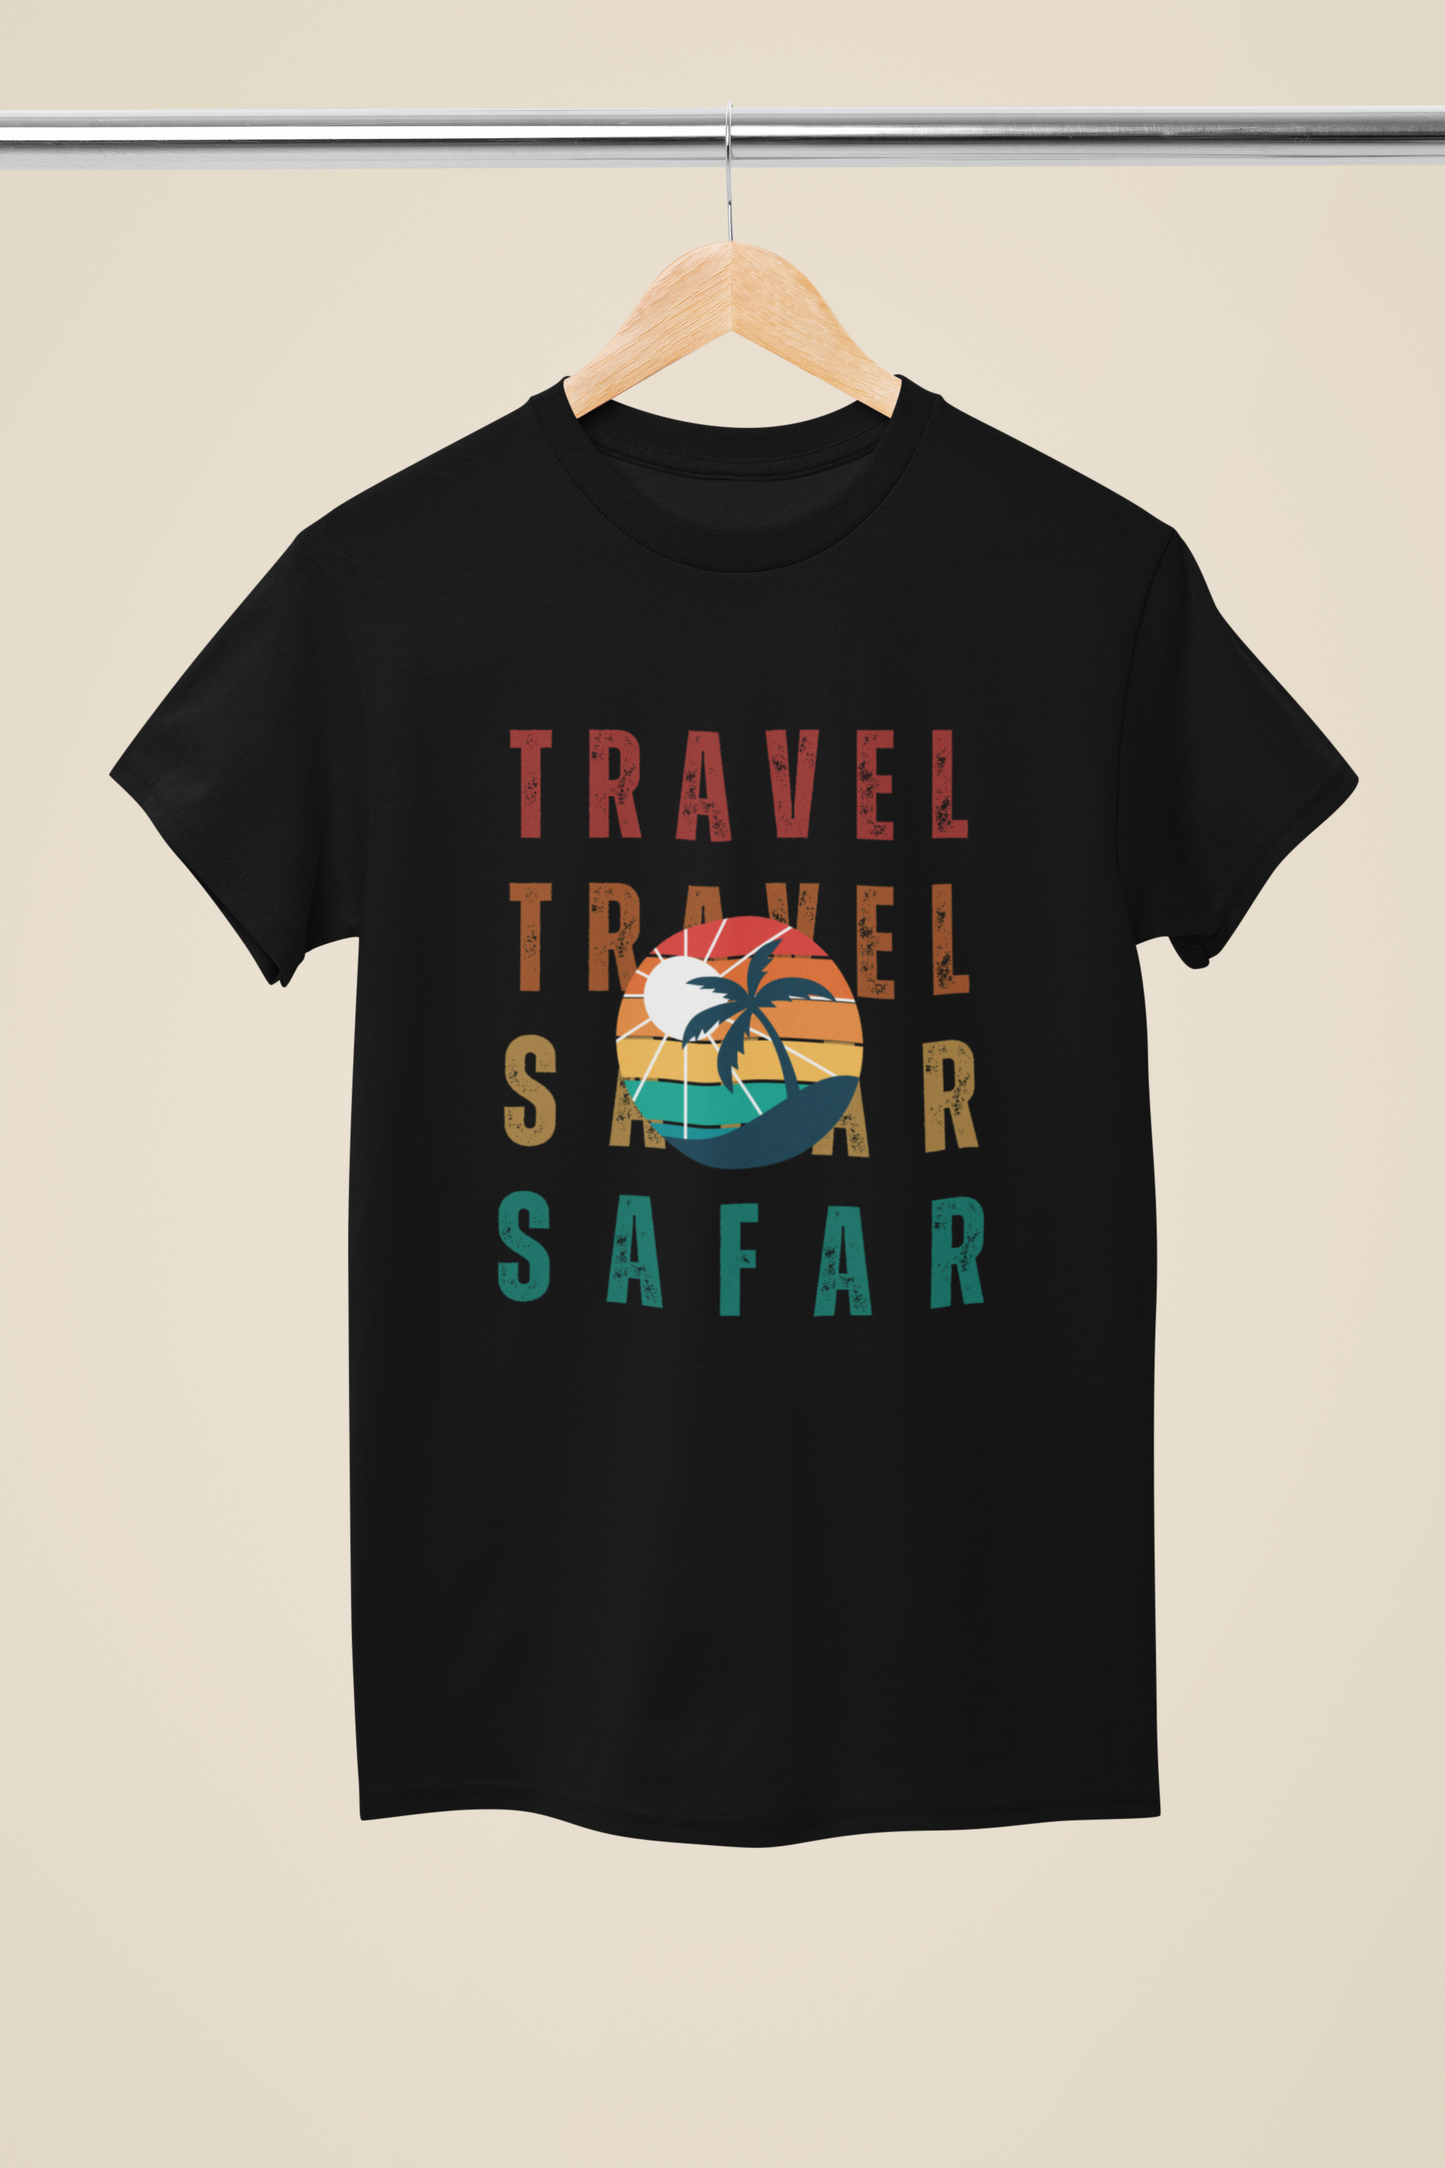 Travel Travel Safar Safar